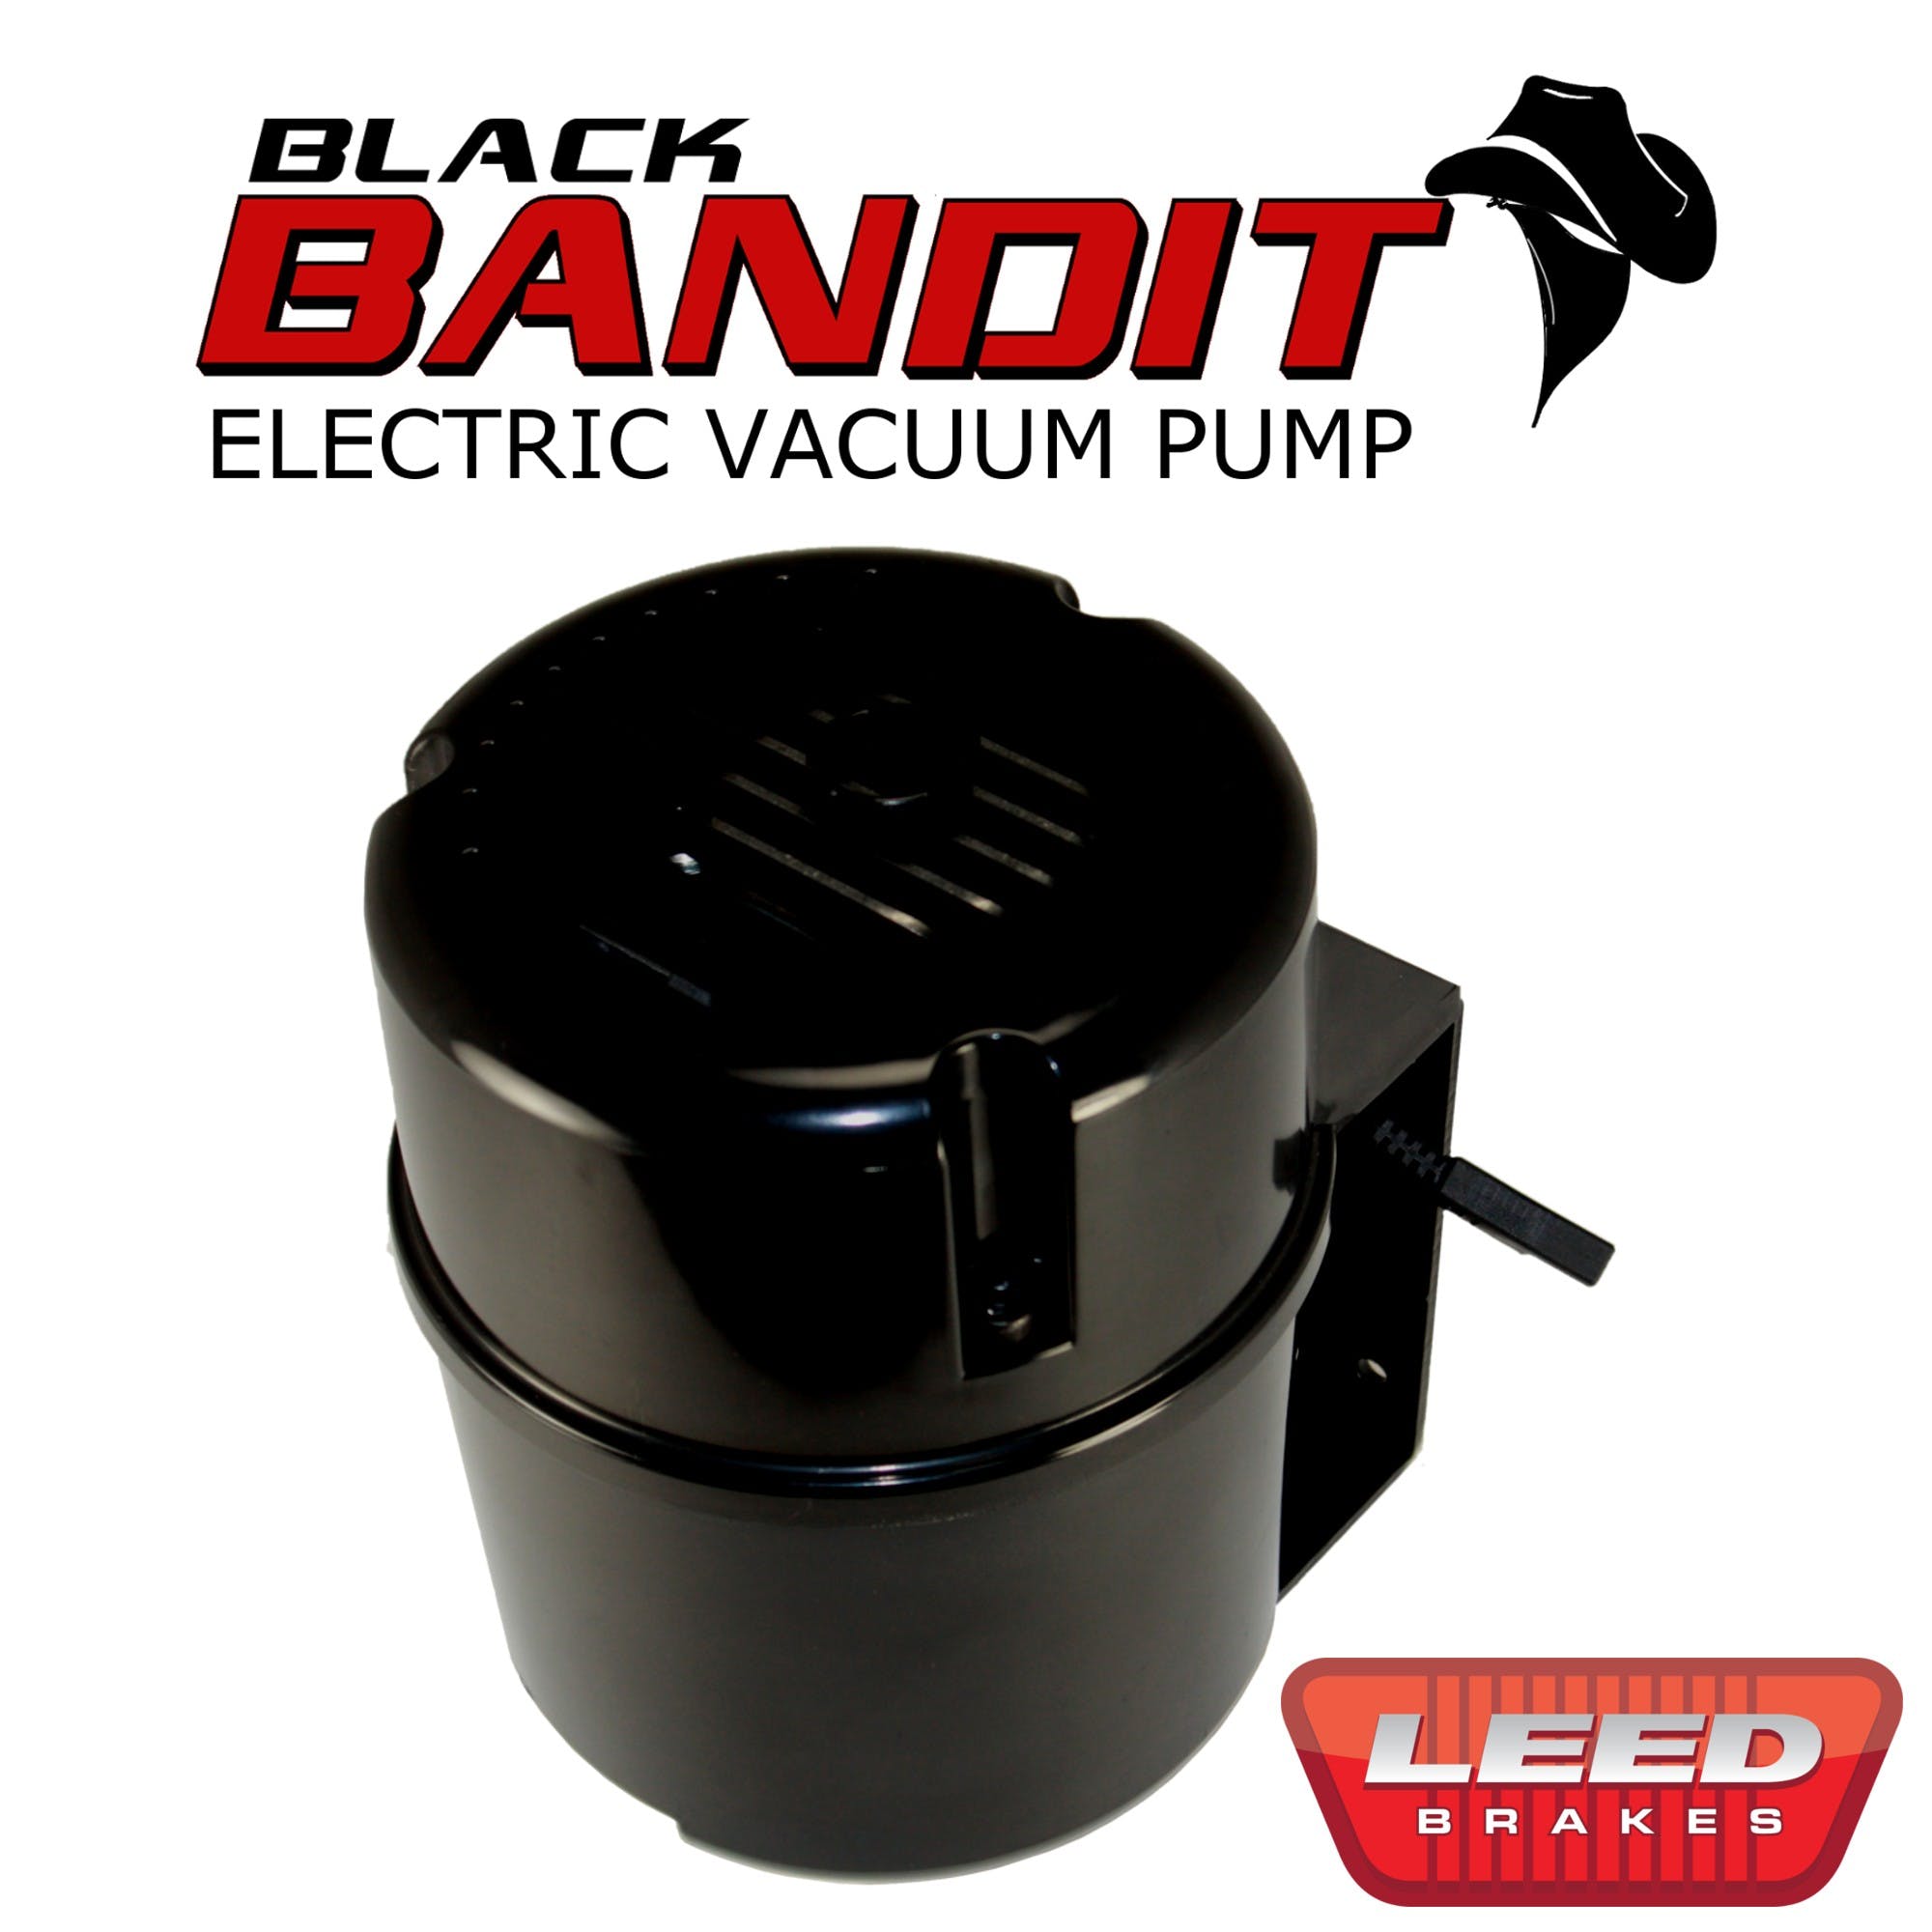 LEED Brakes VP001B Bandit Electric Vacuum Pump - Black